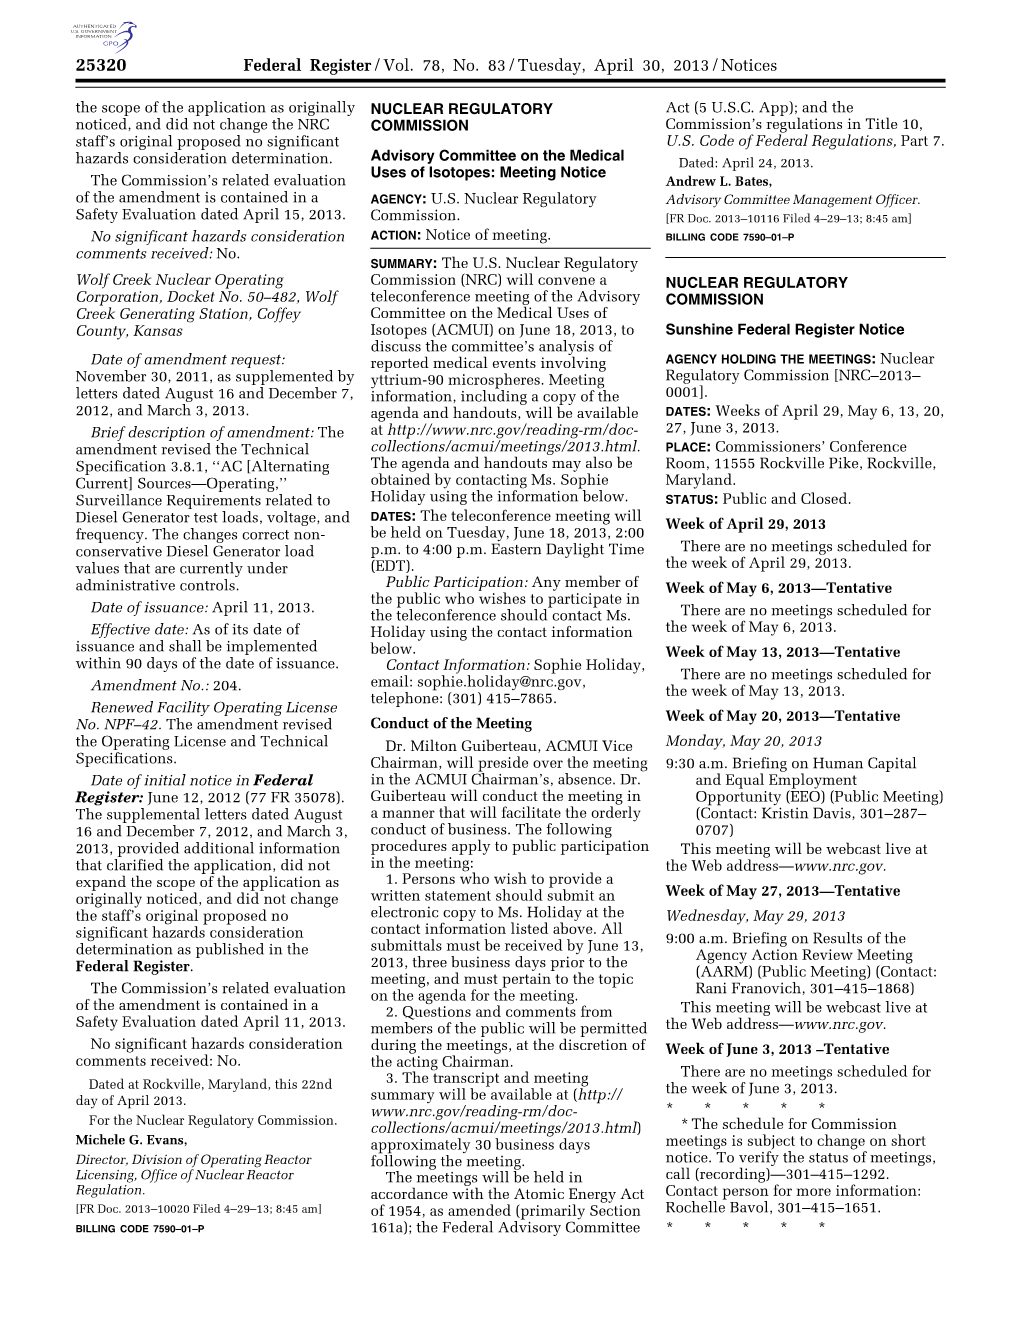 Federal Register/Vol. 78, No. 83/Tuesday, April 30, 2013/Notices